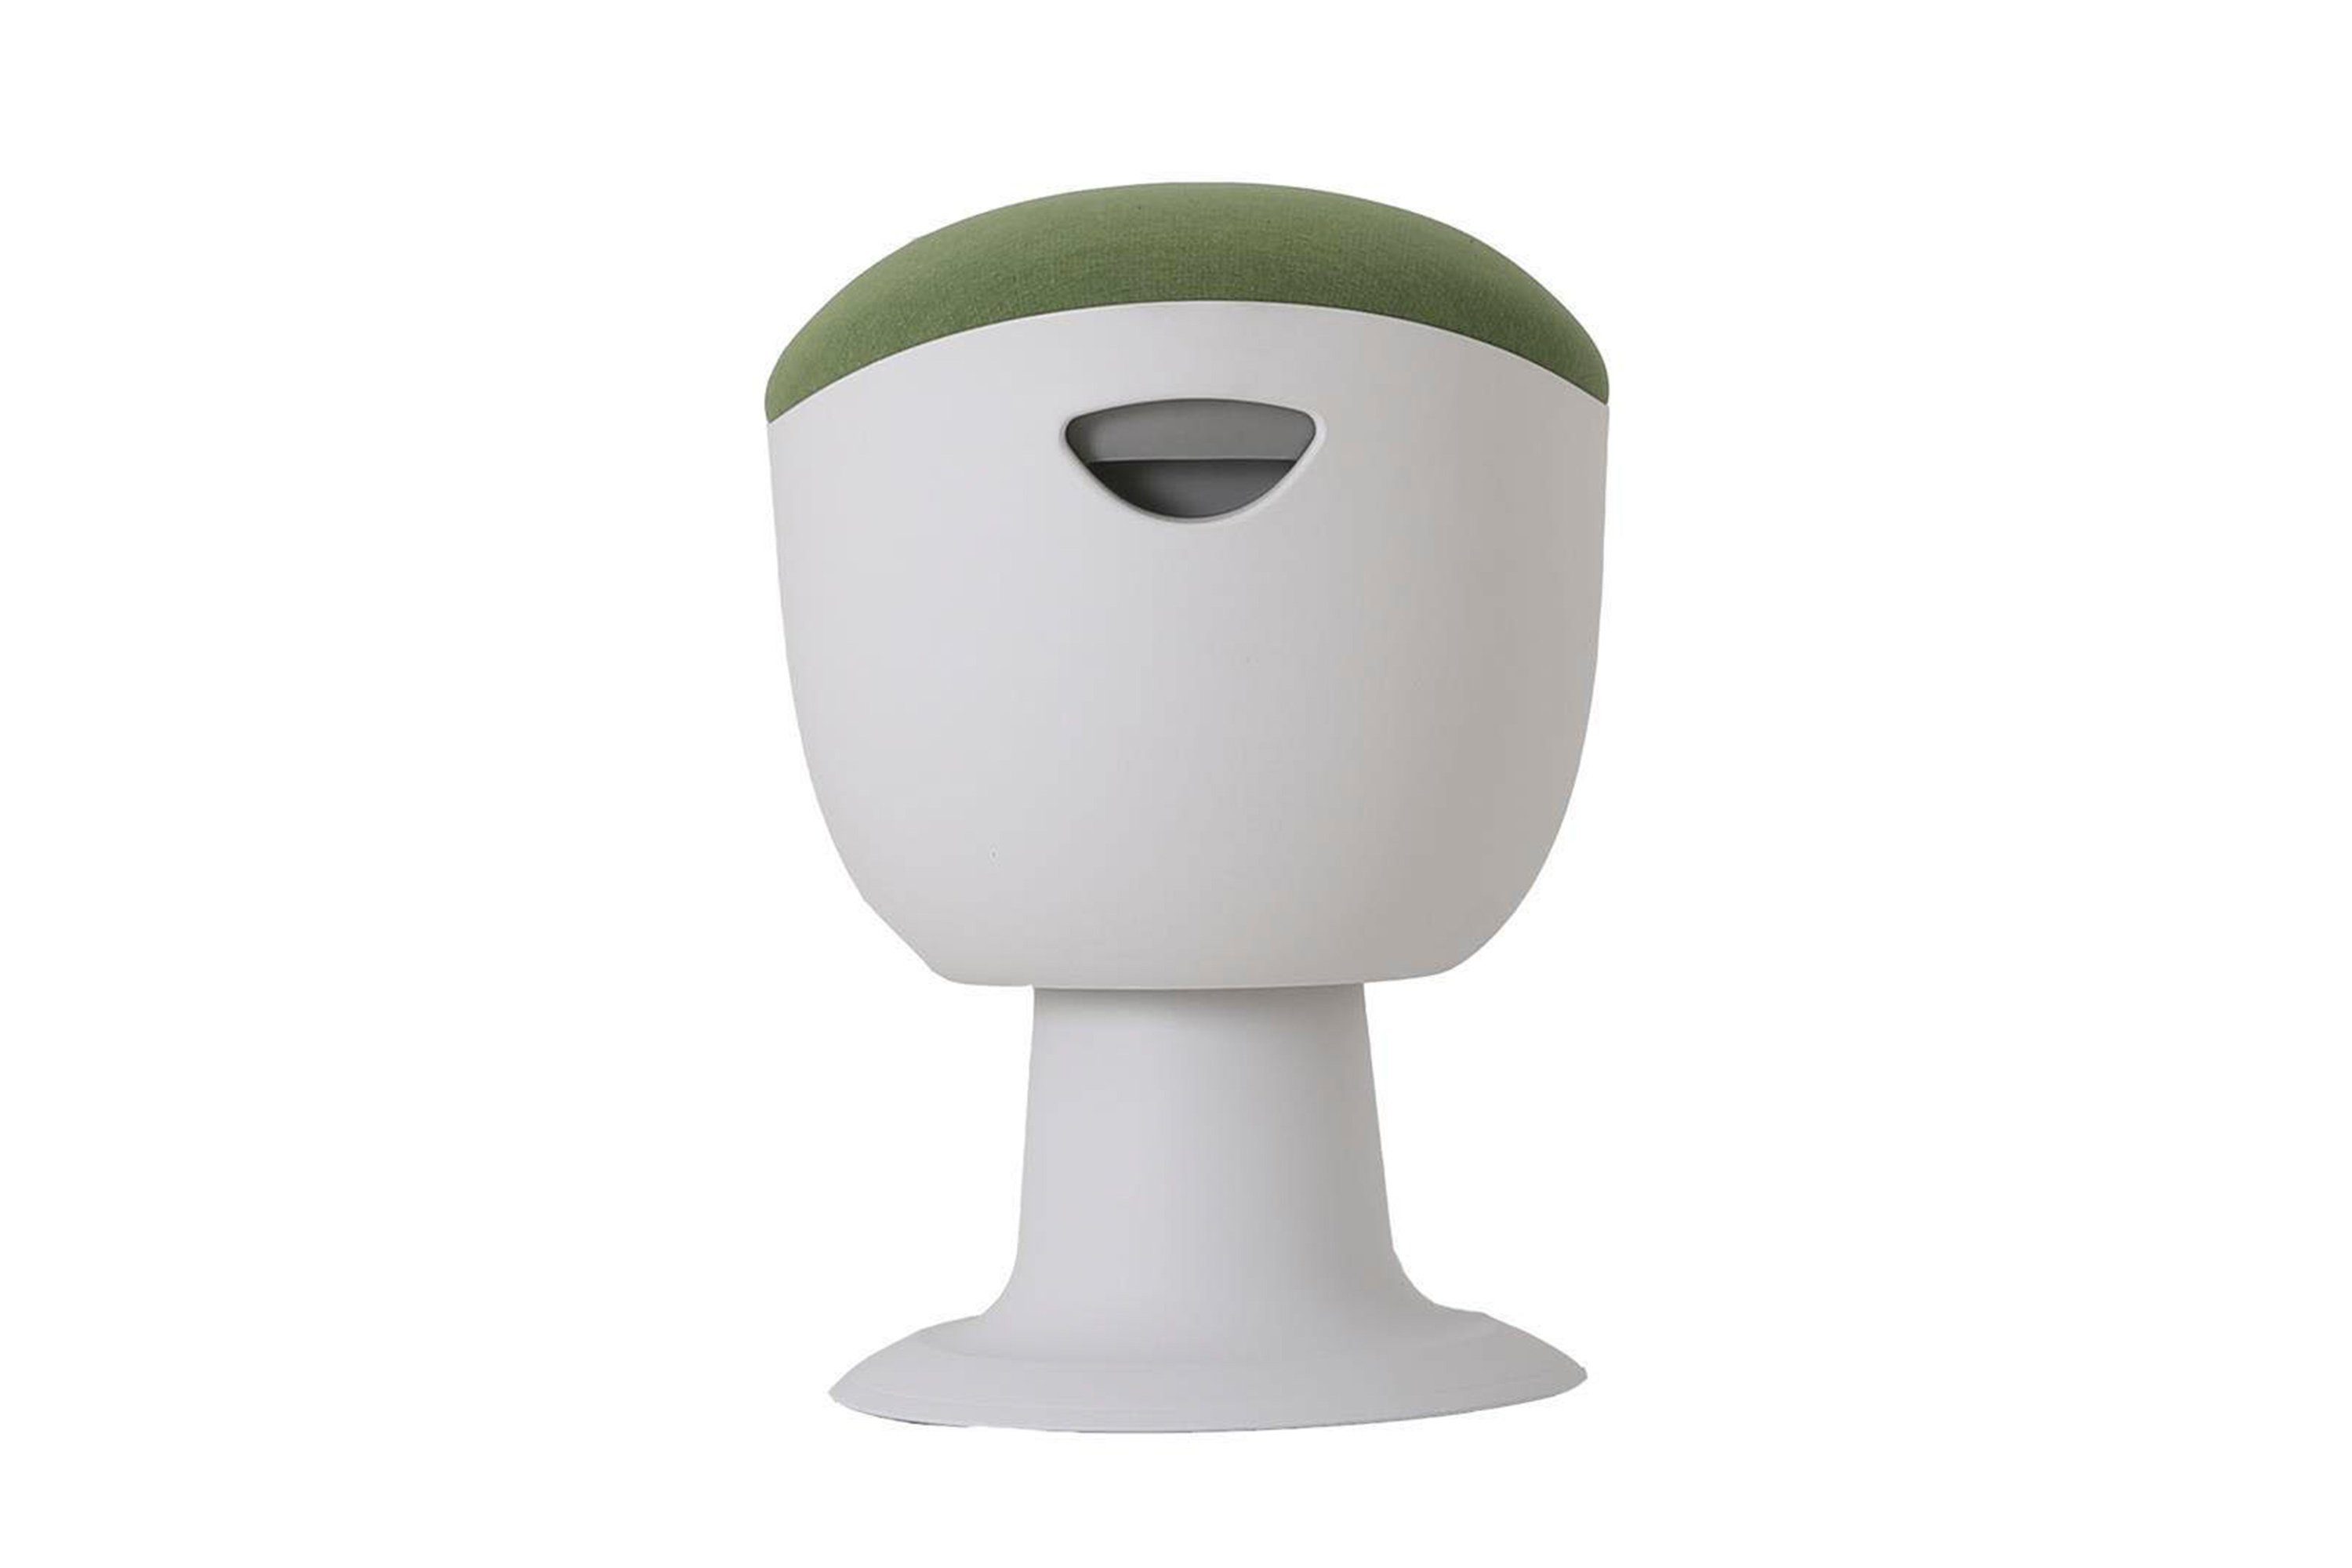 boho living® Sitzhocker Tulip Stool ergonomischer Hocker, in weiß mit grünem Stoffbezug Weiß/Grün